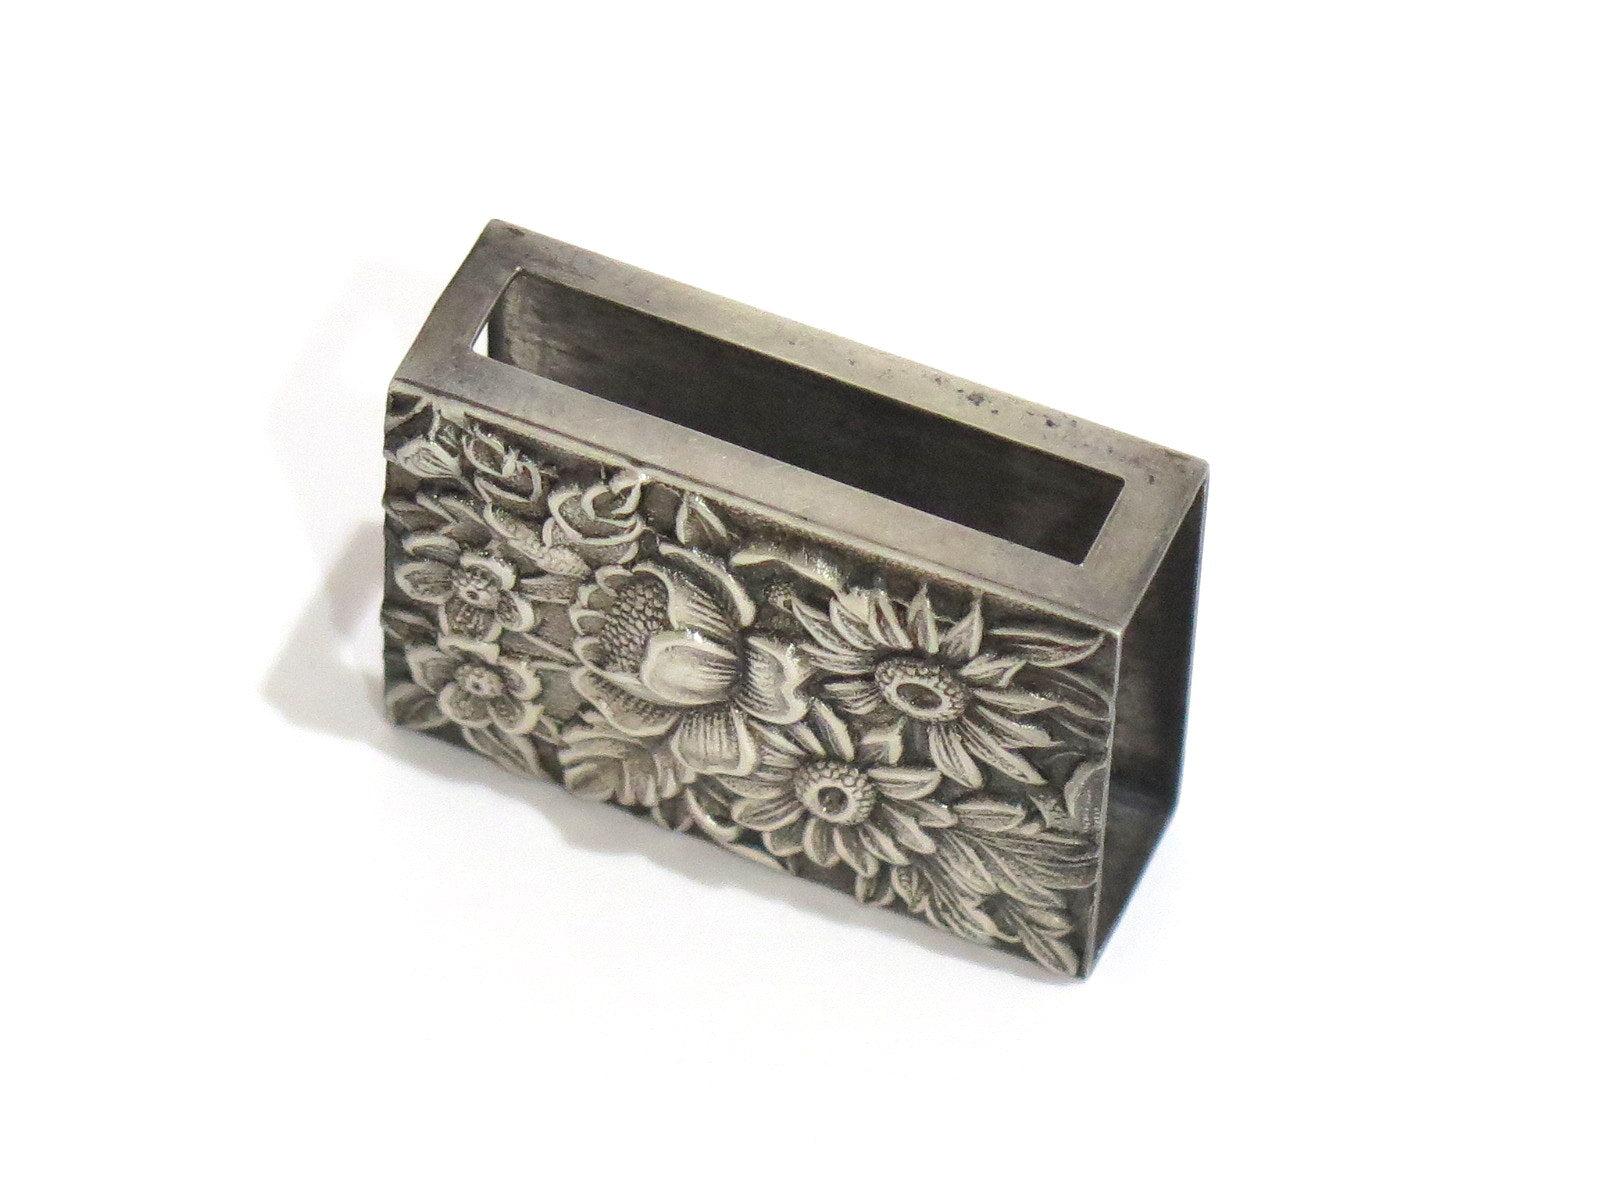 Repoussé Sterling Silver S. Kirk & Son Antique Floral Repousse Match Box Case